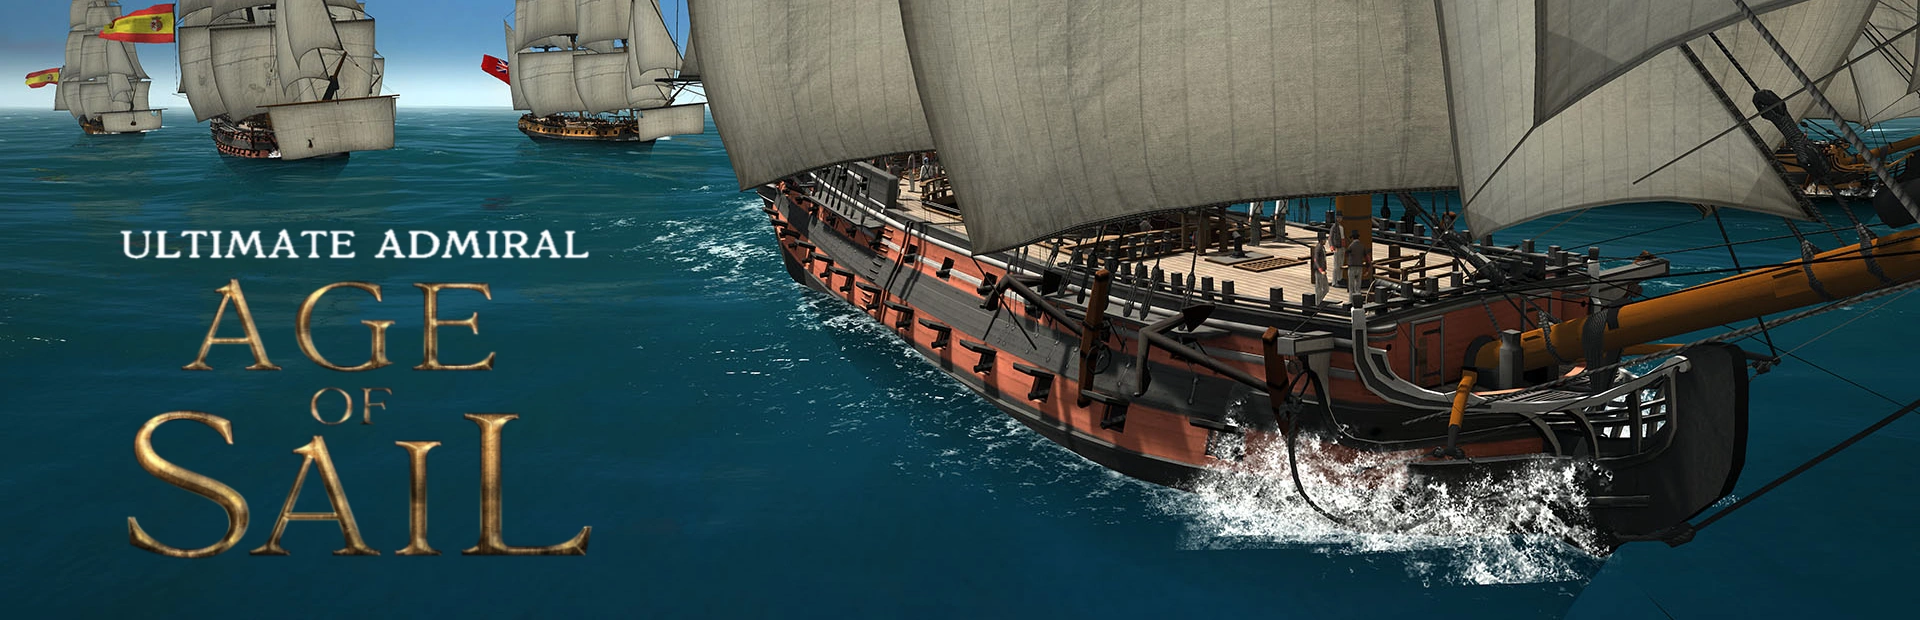 دانلود بازی Ultimate Admiral Age of Sail برای کامپیوتر | گیمباتو